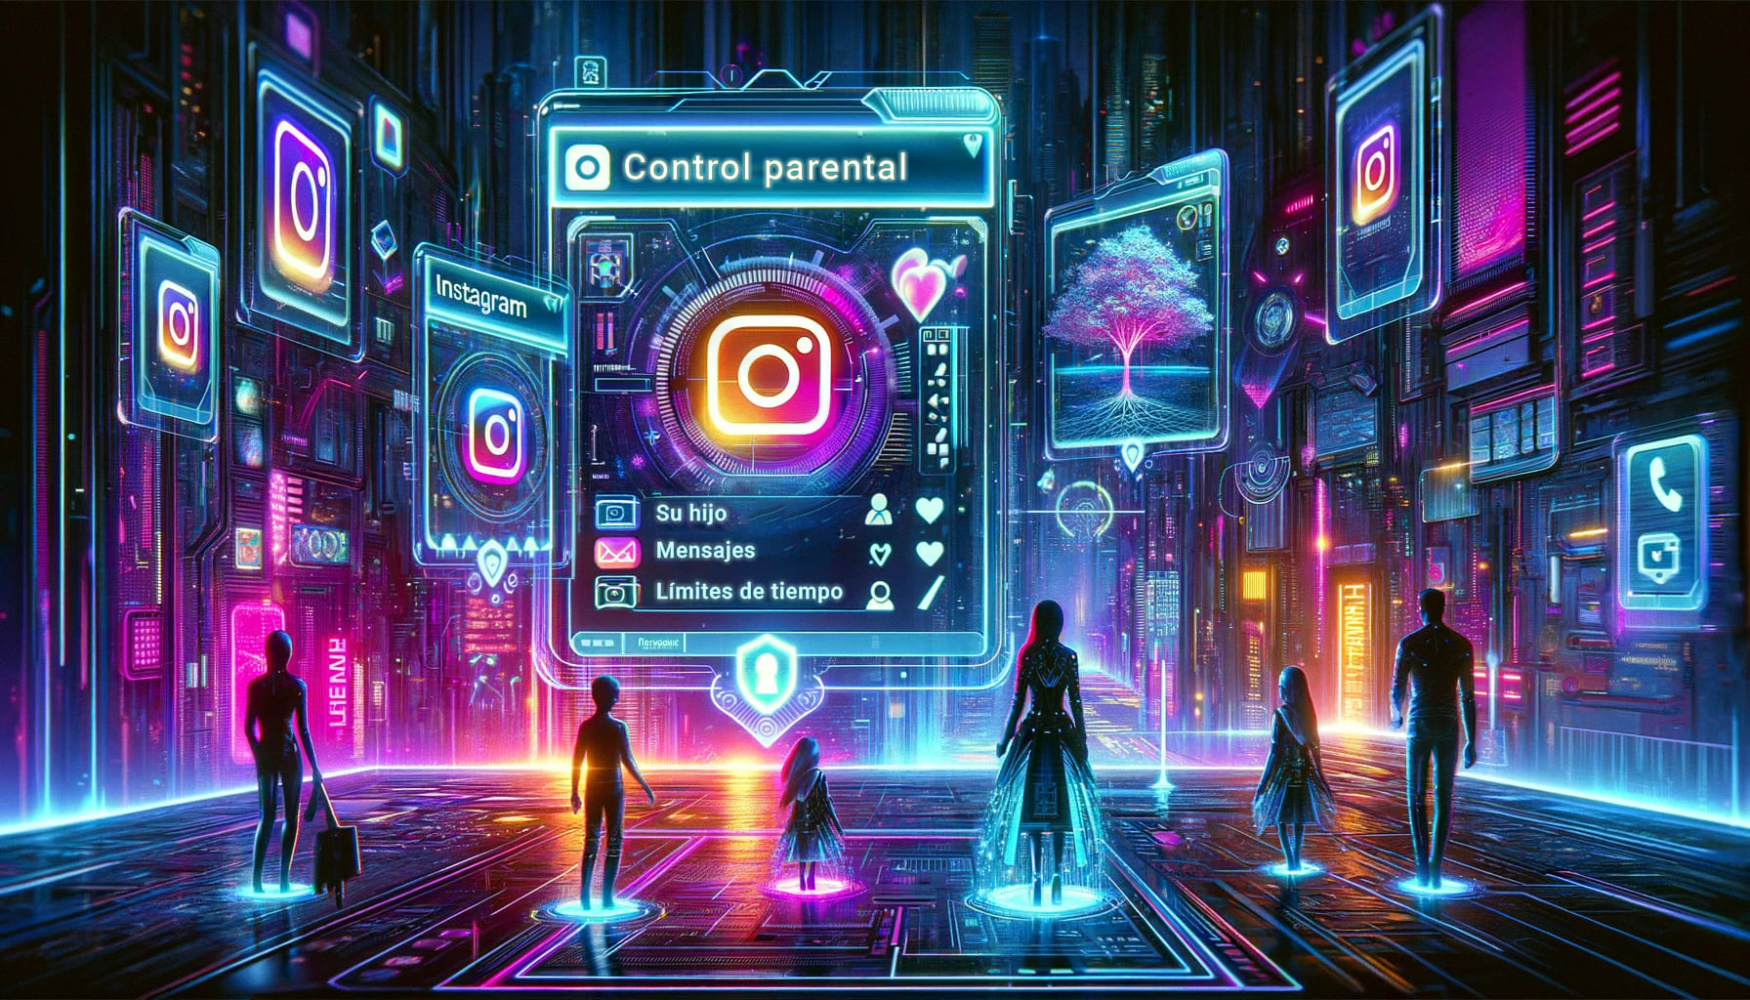 Tres adultos y tres niños de pie en el ecosistema de instagram frente a grandes pantallas brillantes con logotipos de instagram y la más grande revelando información sobre el control parental